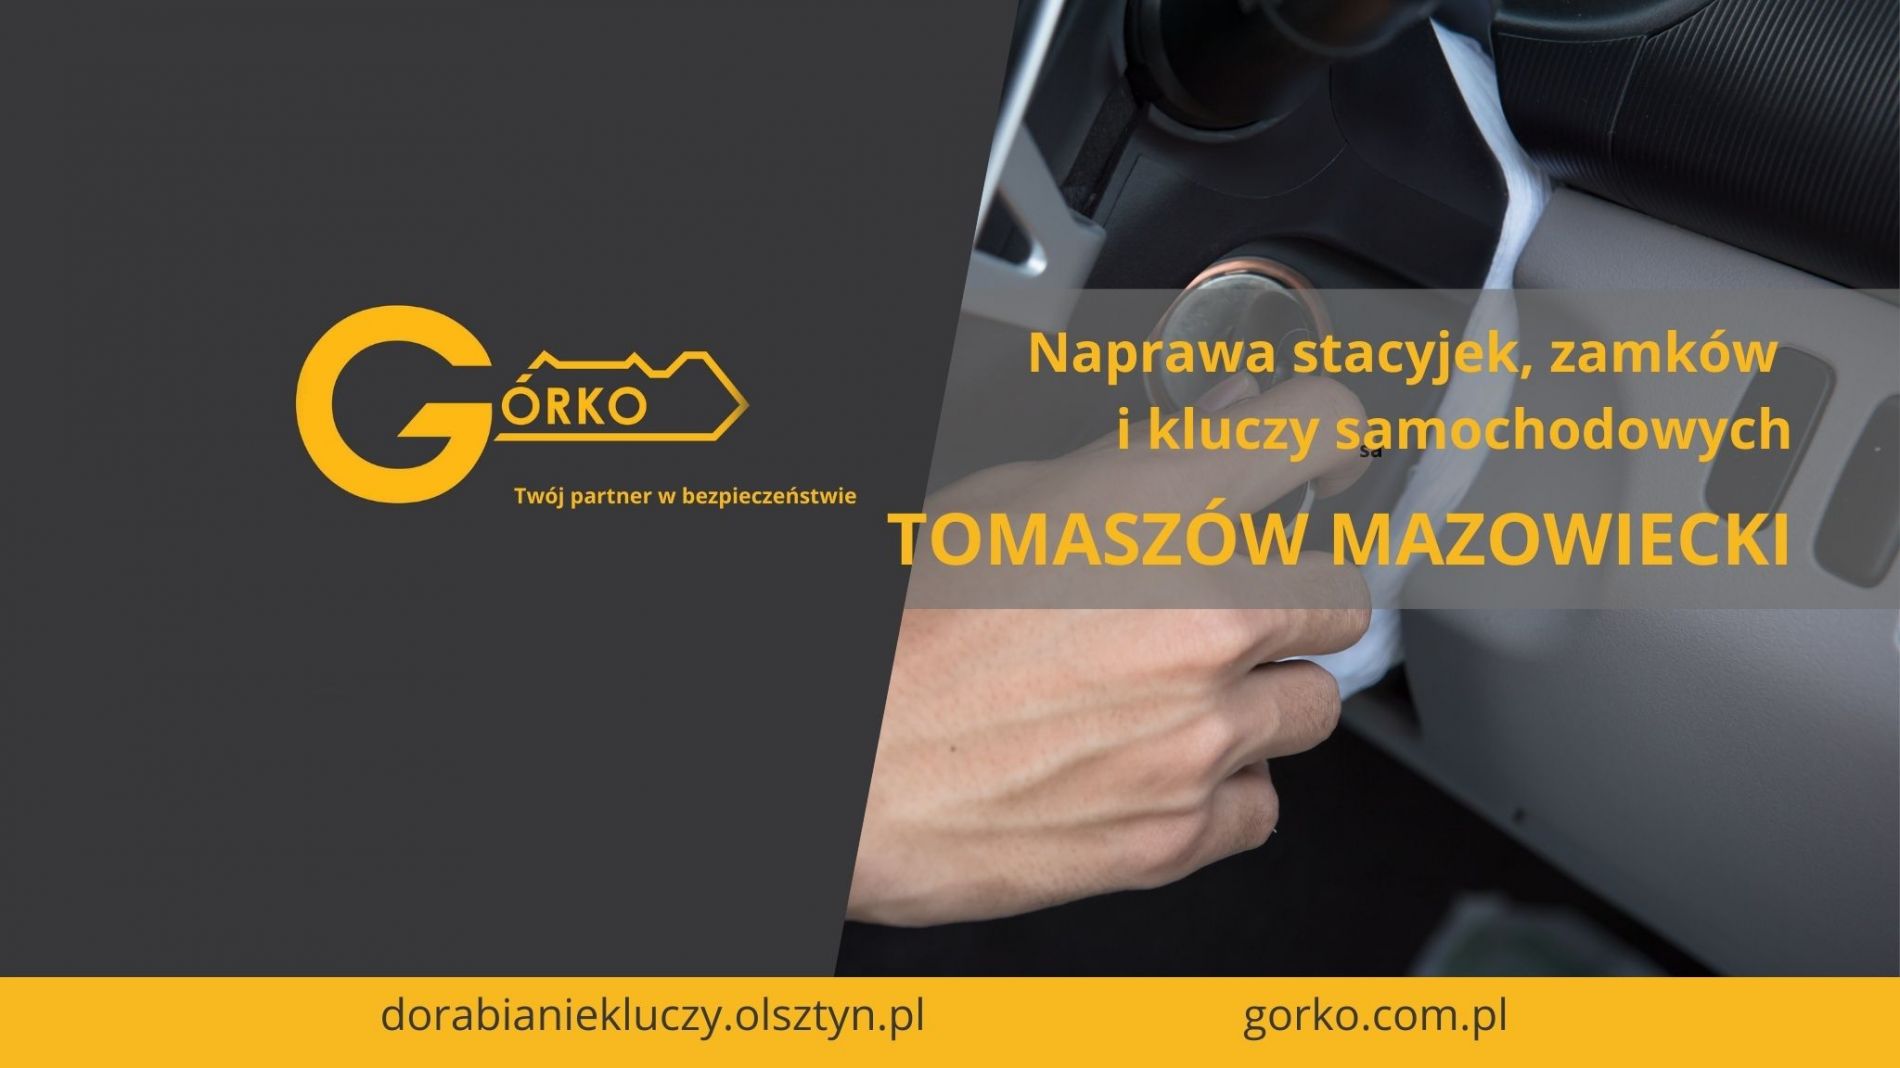 Naprawa stacyjek, zamków i kluczy samochodowych – Tomaszów Mazowiecki (Usługa zdalna)